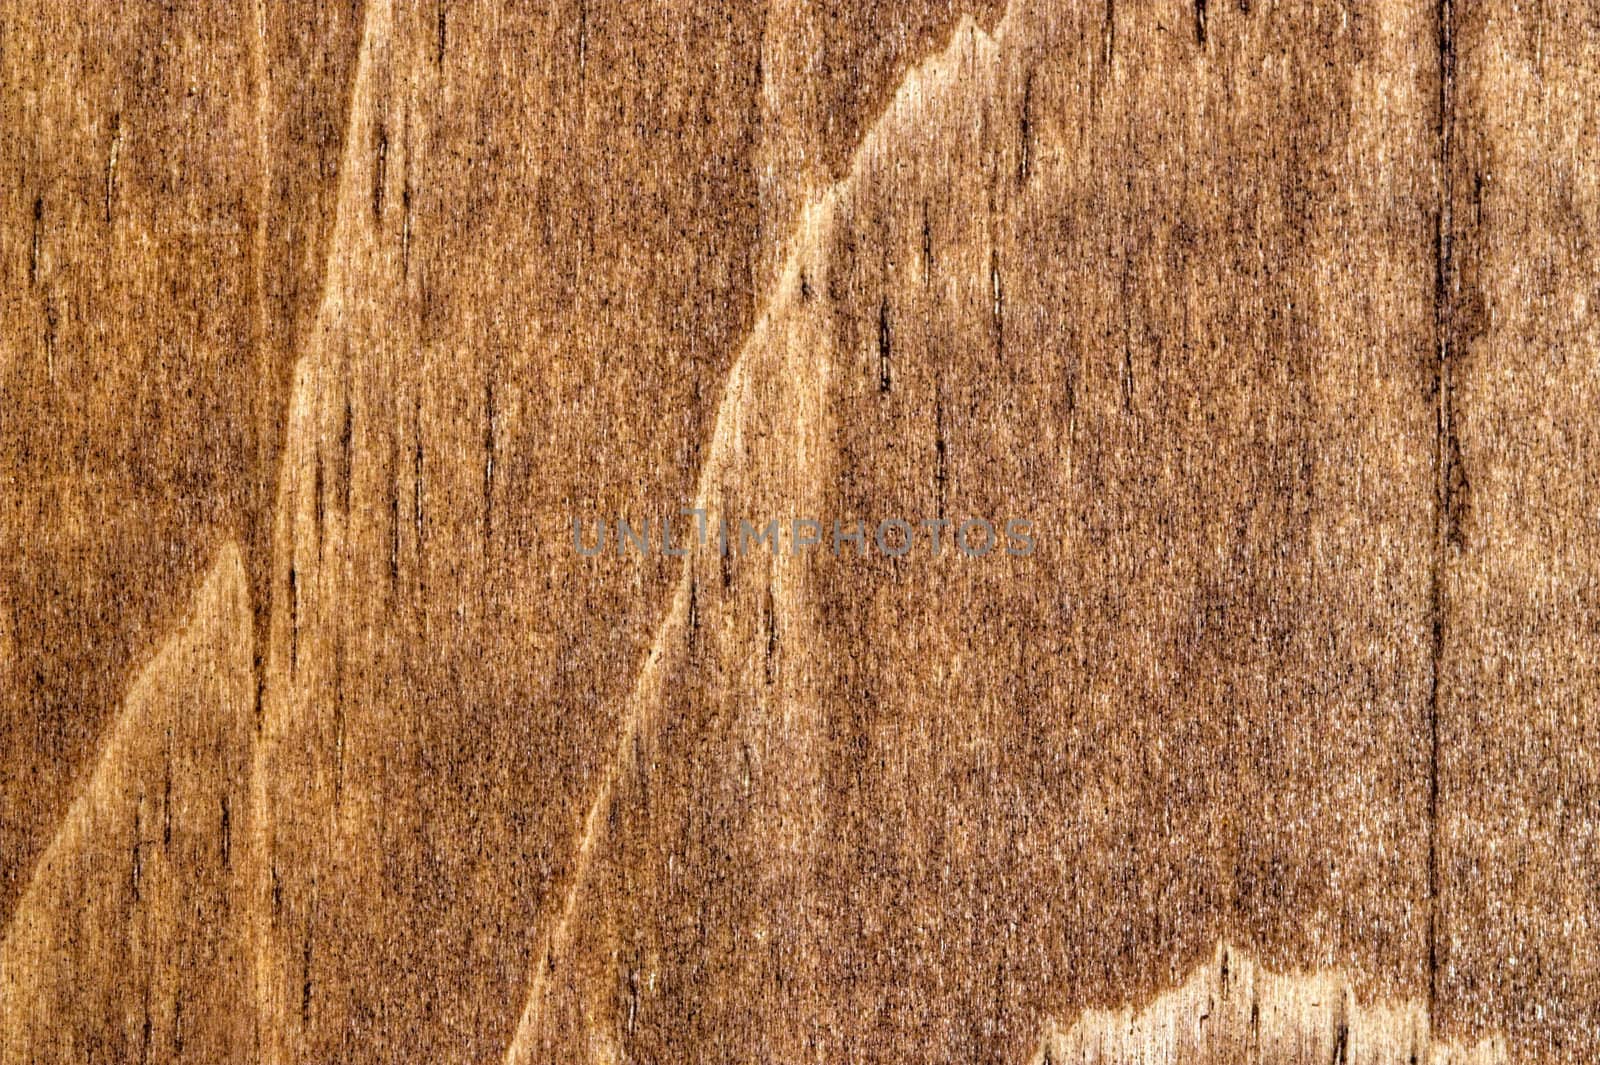 Wood Grain 1 by sbonk